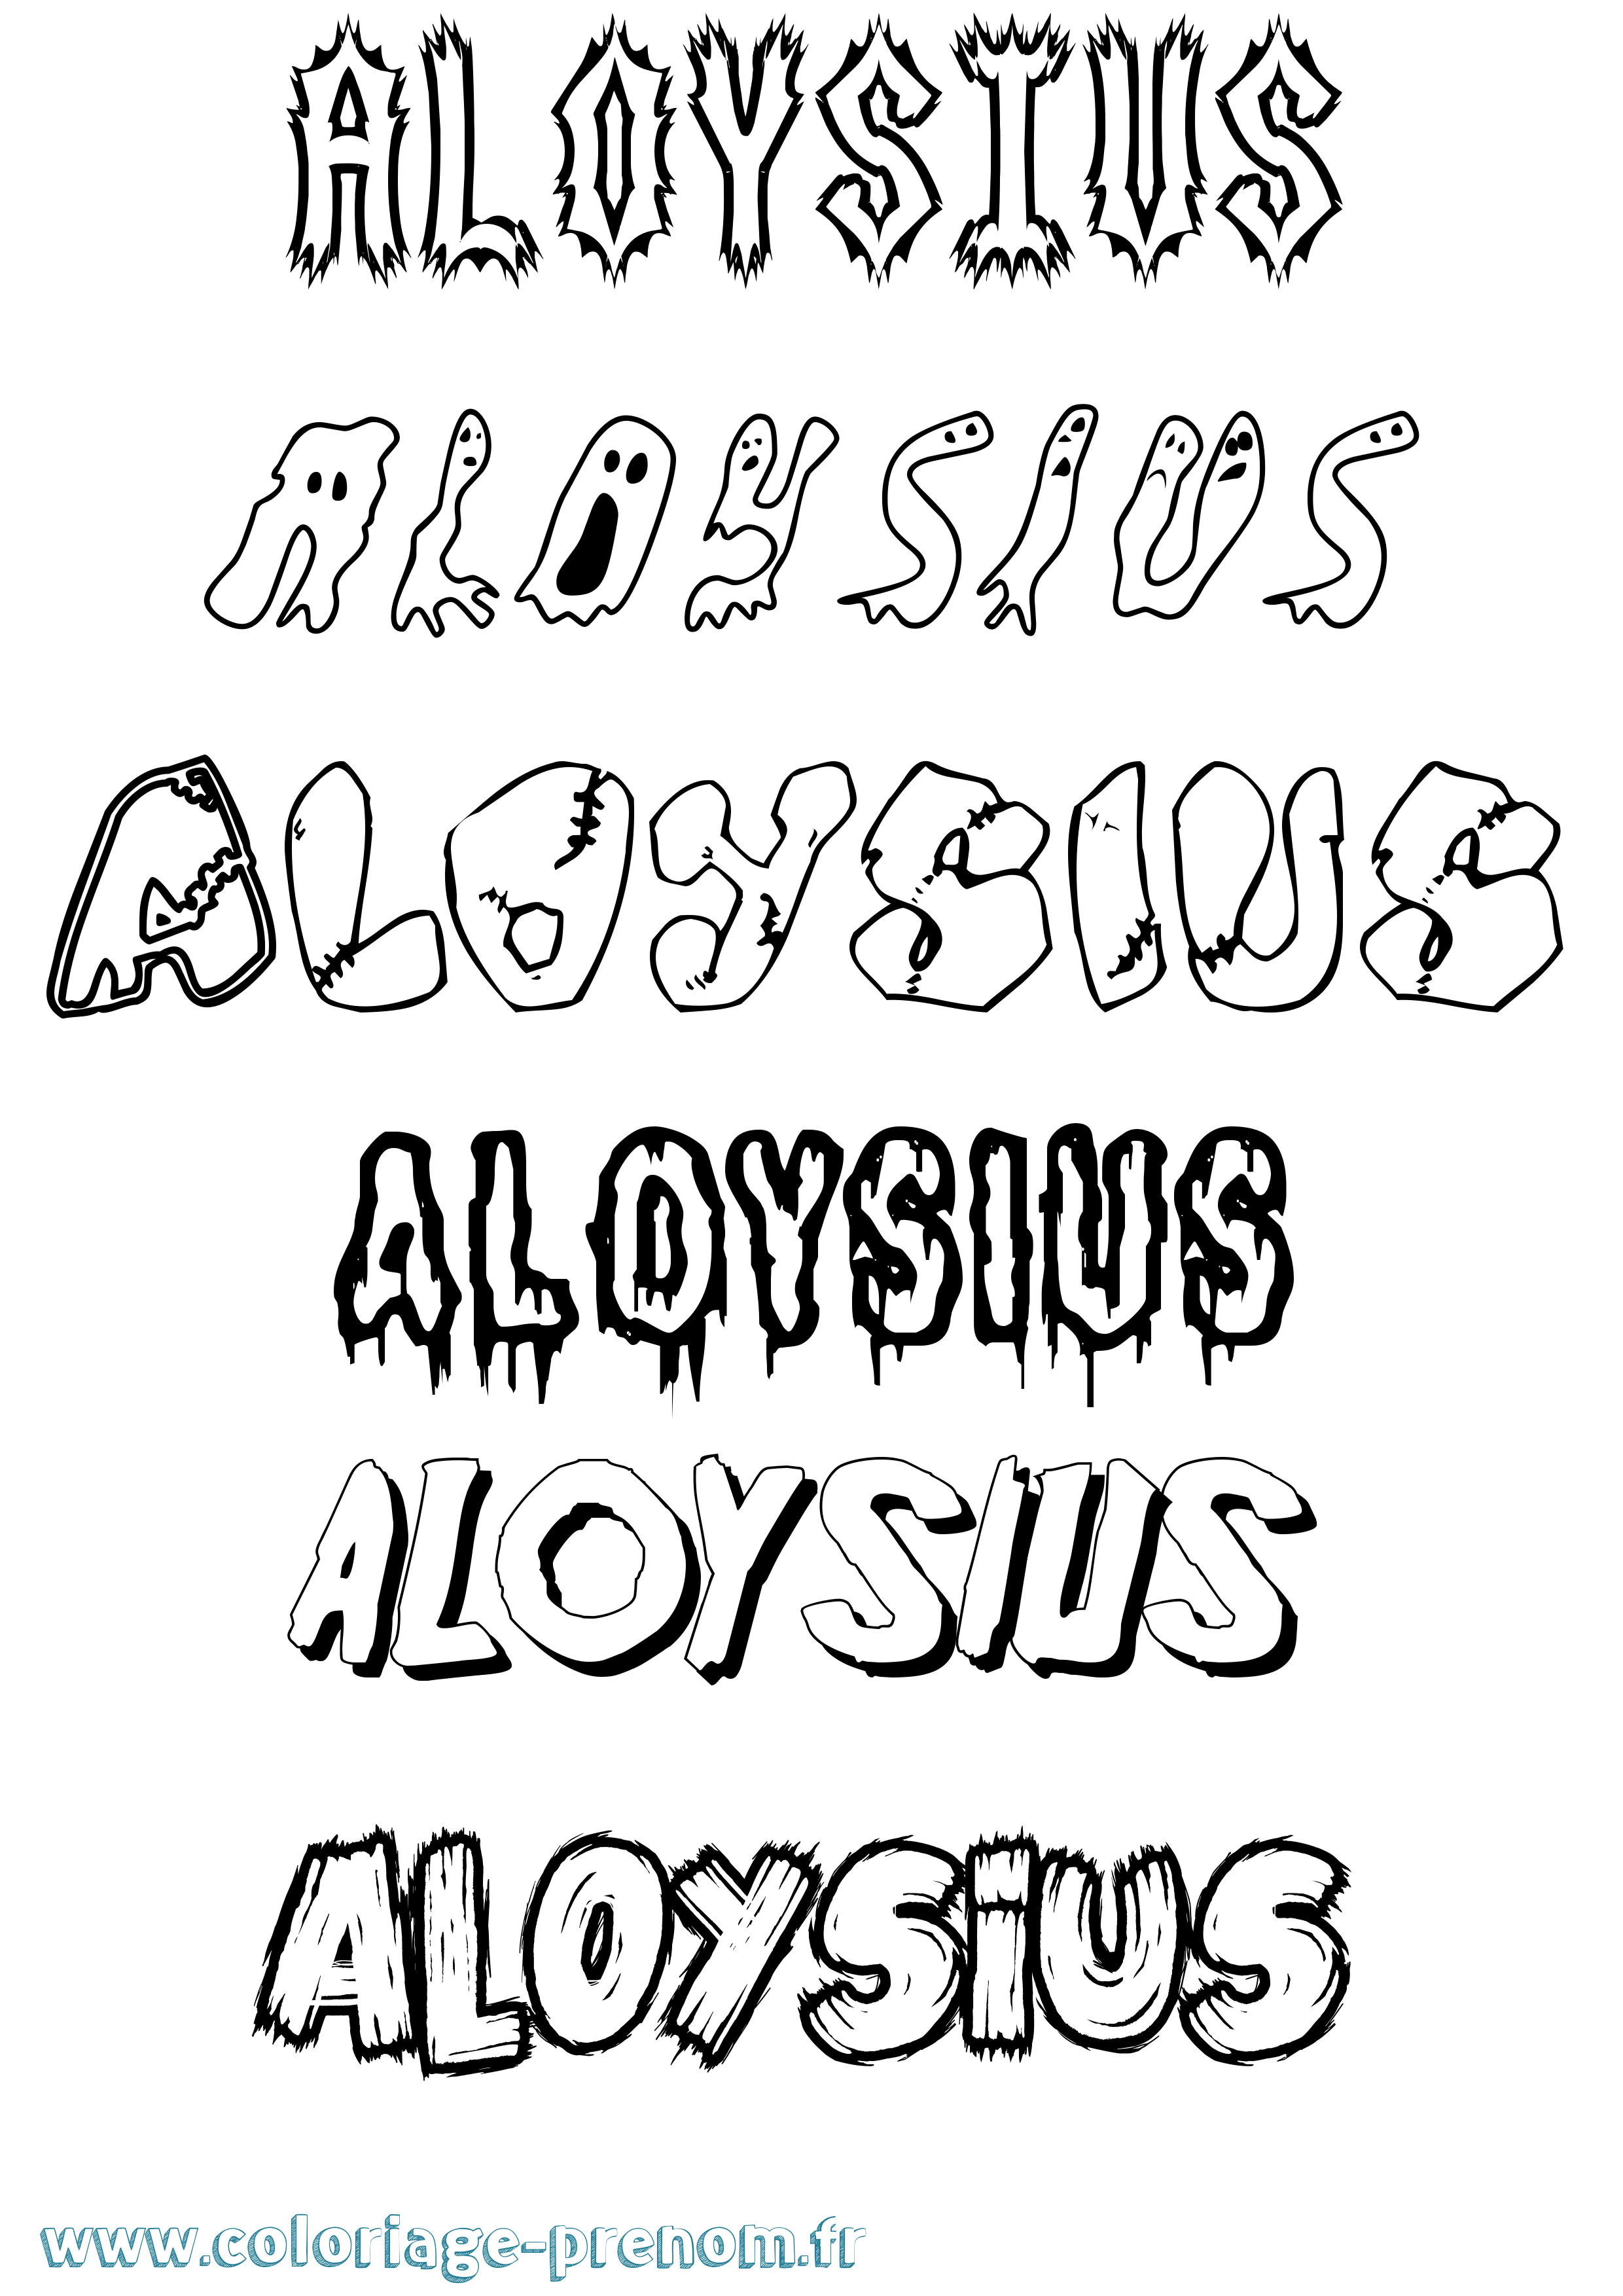 Coloriage prénom Aloysius Frisson